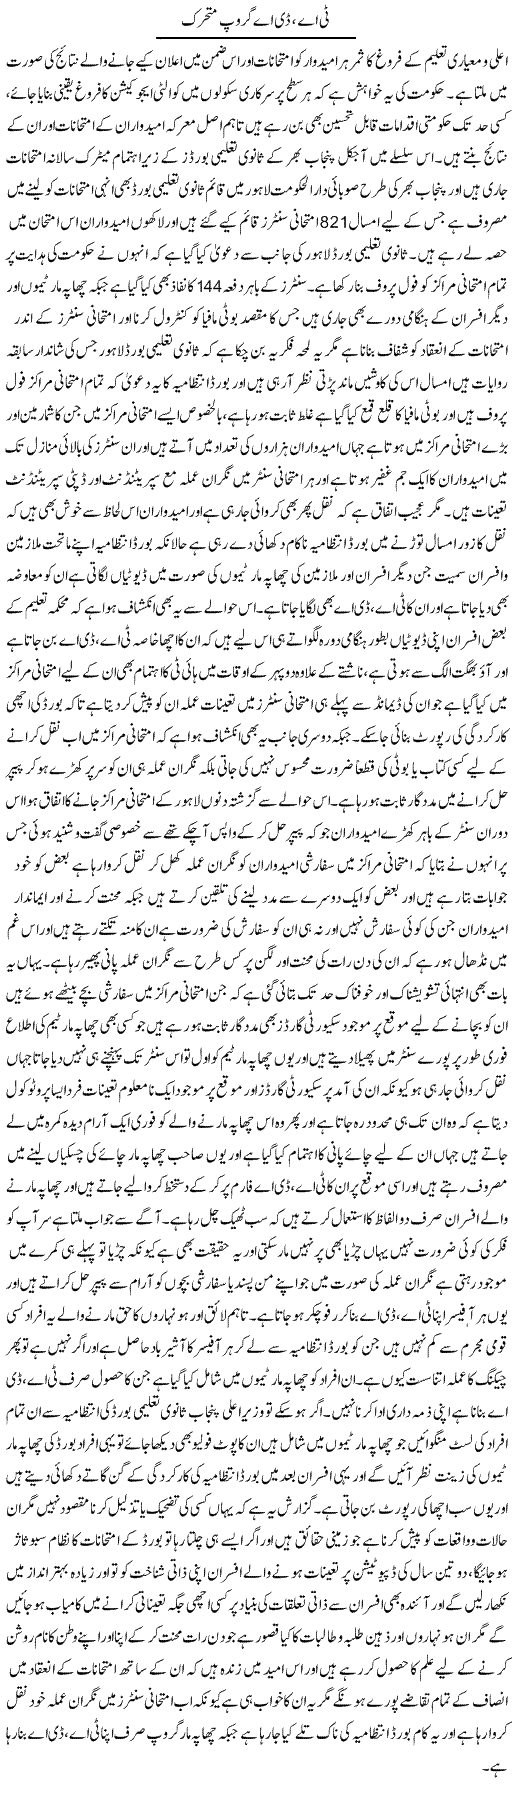 TA, DA Group Mutaharrik | Yousaf Abbasi | Daily Urdu Columns